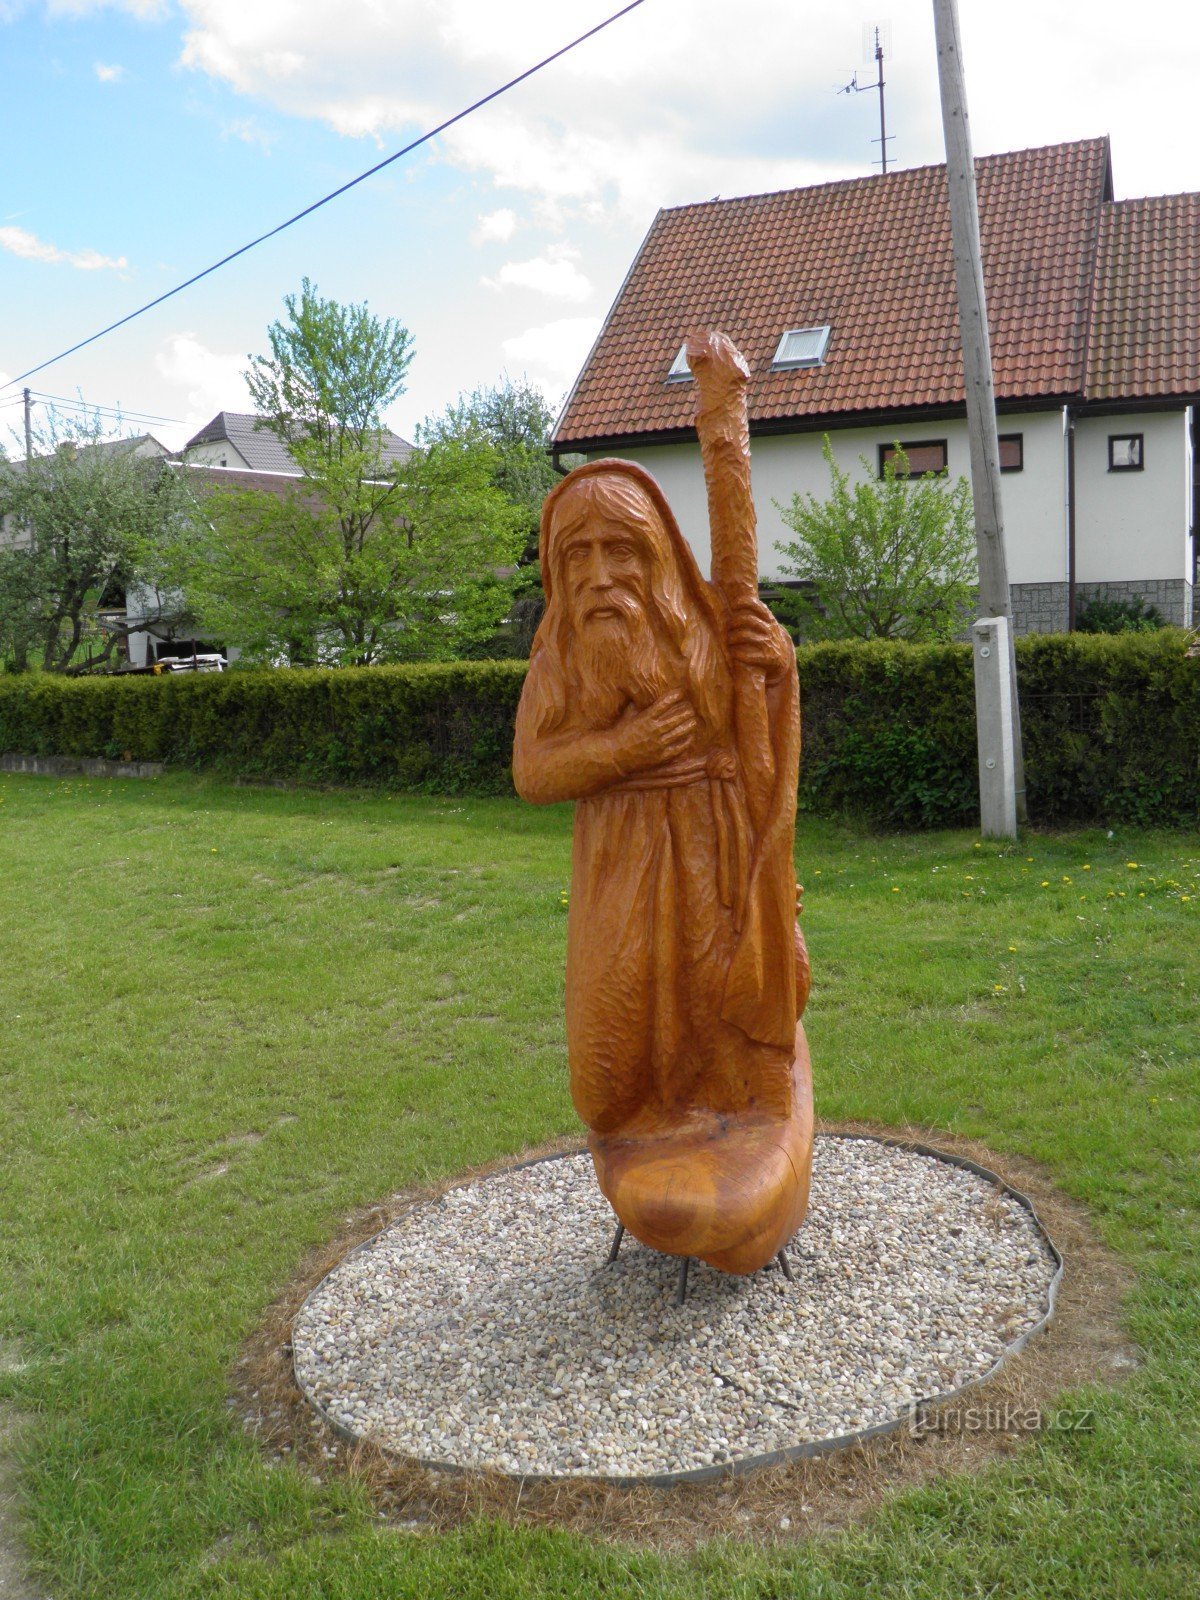 Träskulpturer av St. Wenceslas och pilgrimen i Rohozná